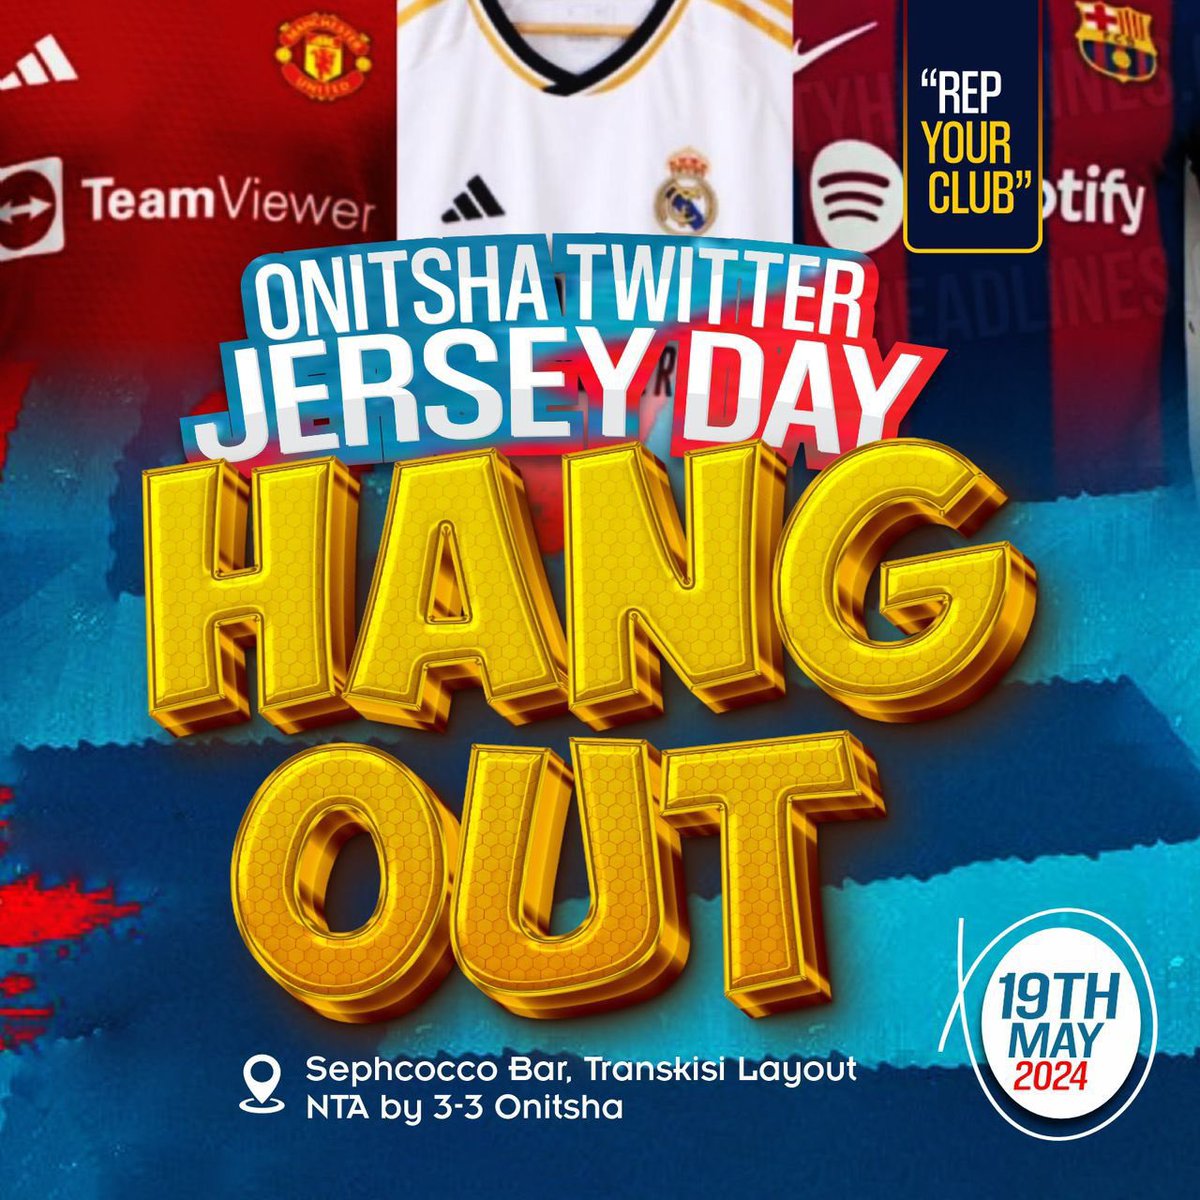 Are you coming?

#OnitshaTwitterJerseyHangout #RepYourClub #OnitshaTwitterCommunity